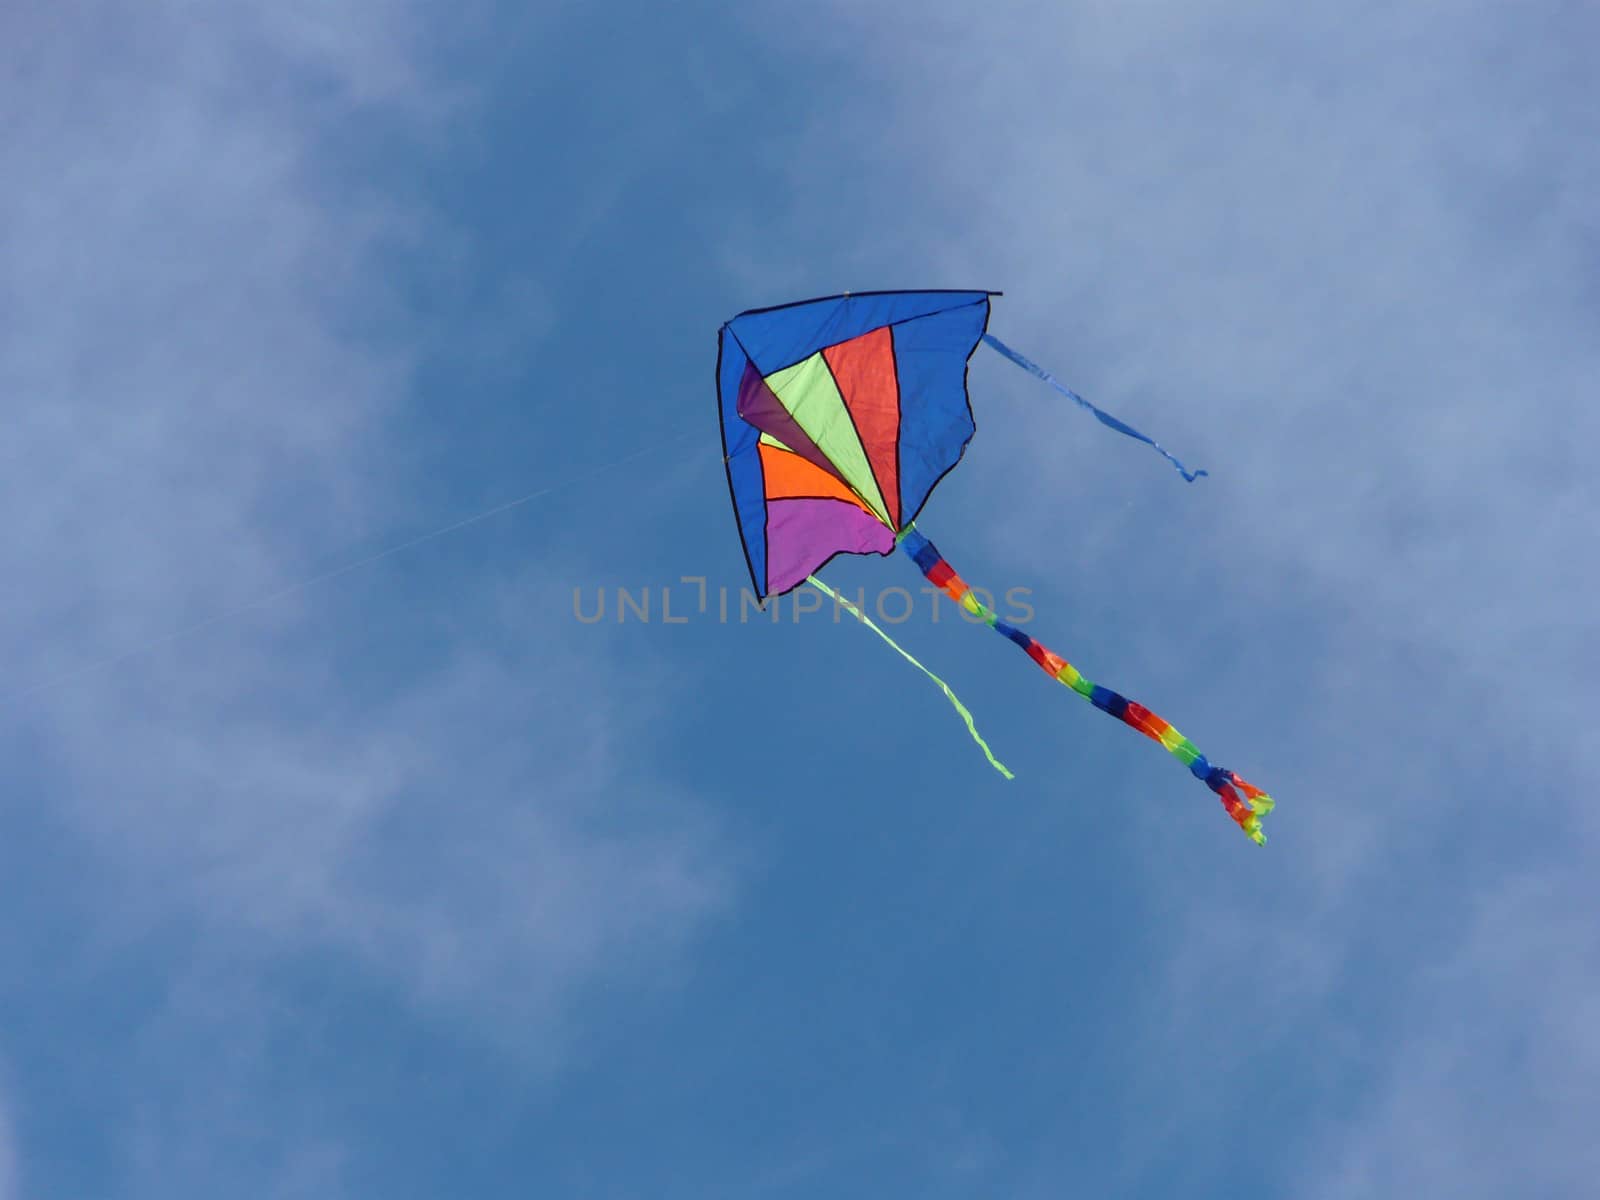 Kite in the sky